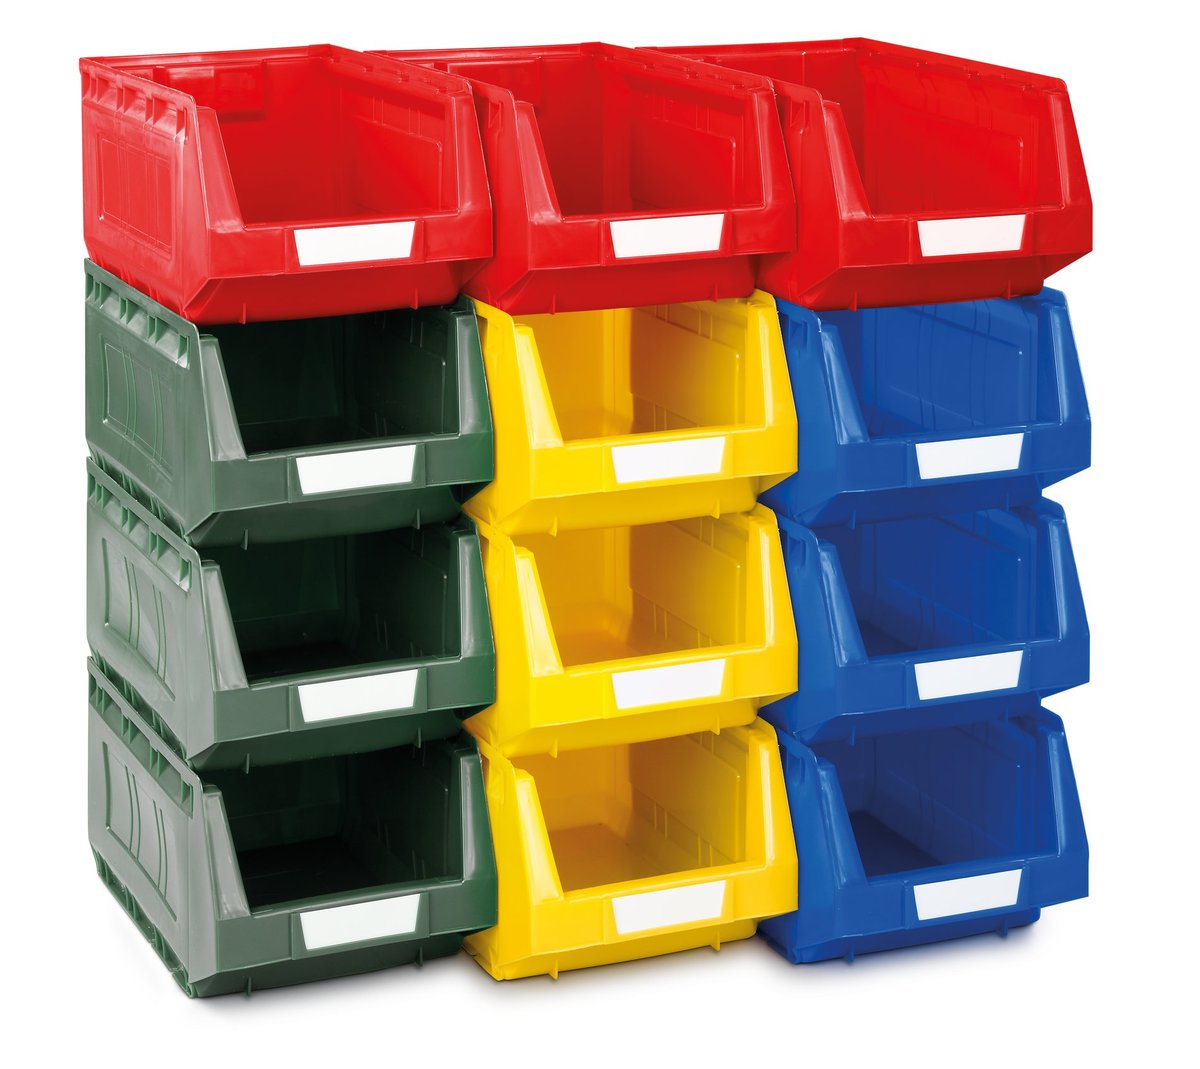 02510077 - Plastic bin kit